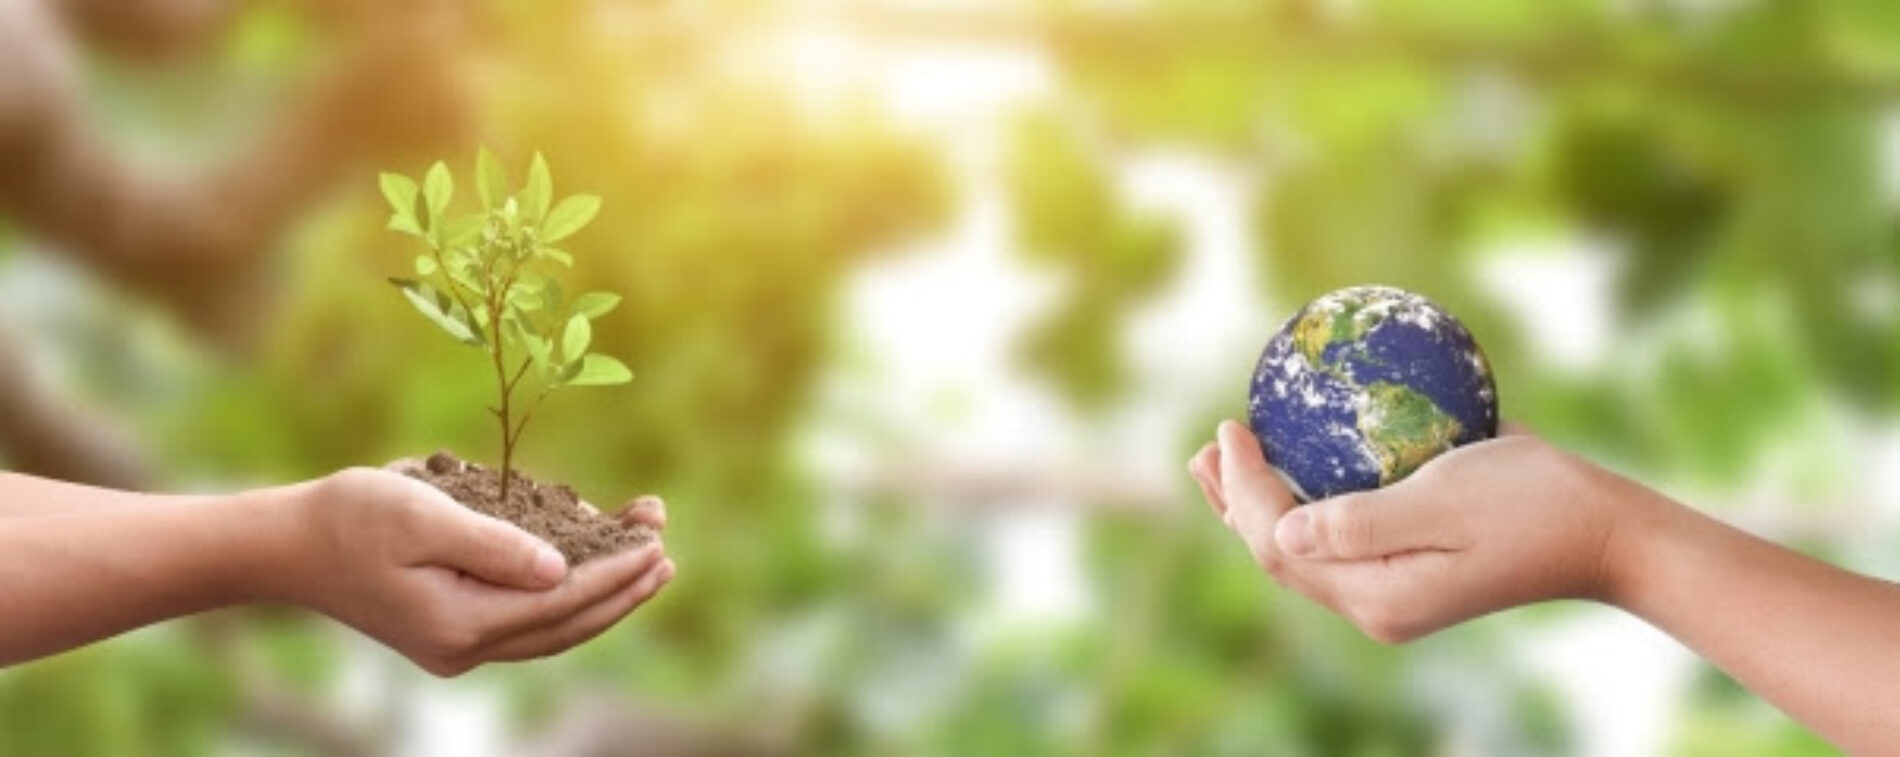 Día Mundial del Medio Ambiente: Tres prácticas cotidianas para contribuir con el cuidado medioambiental